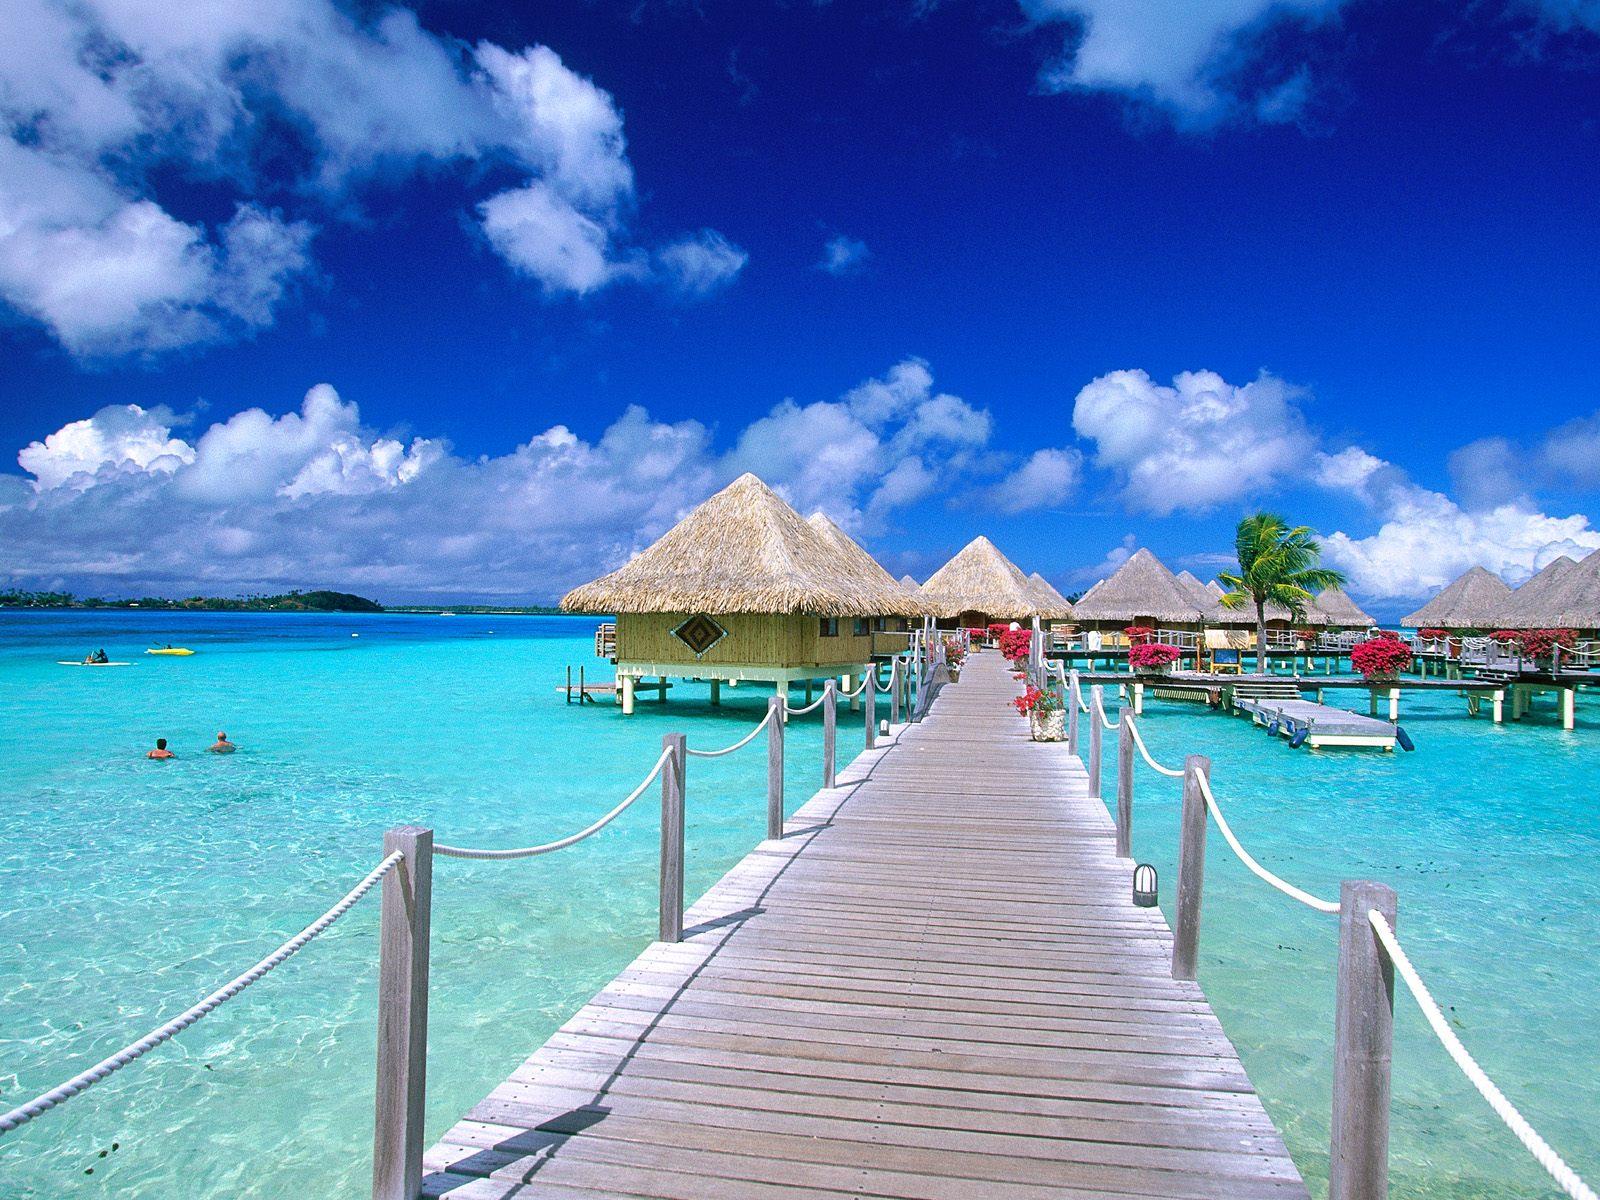 life insurance canada: French Polynesia Tahiti Island